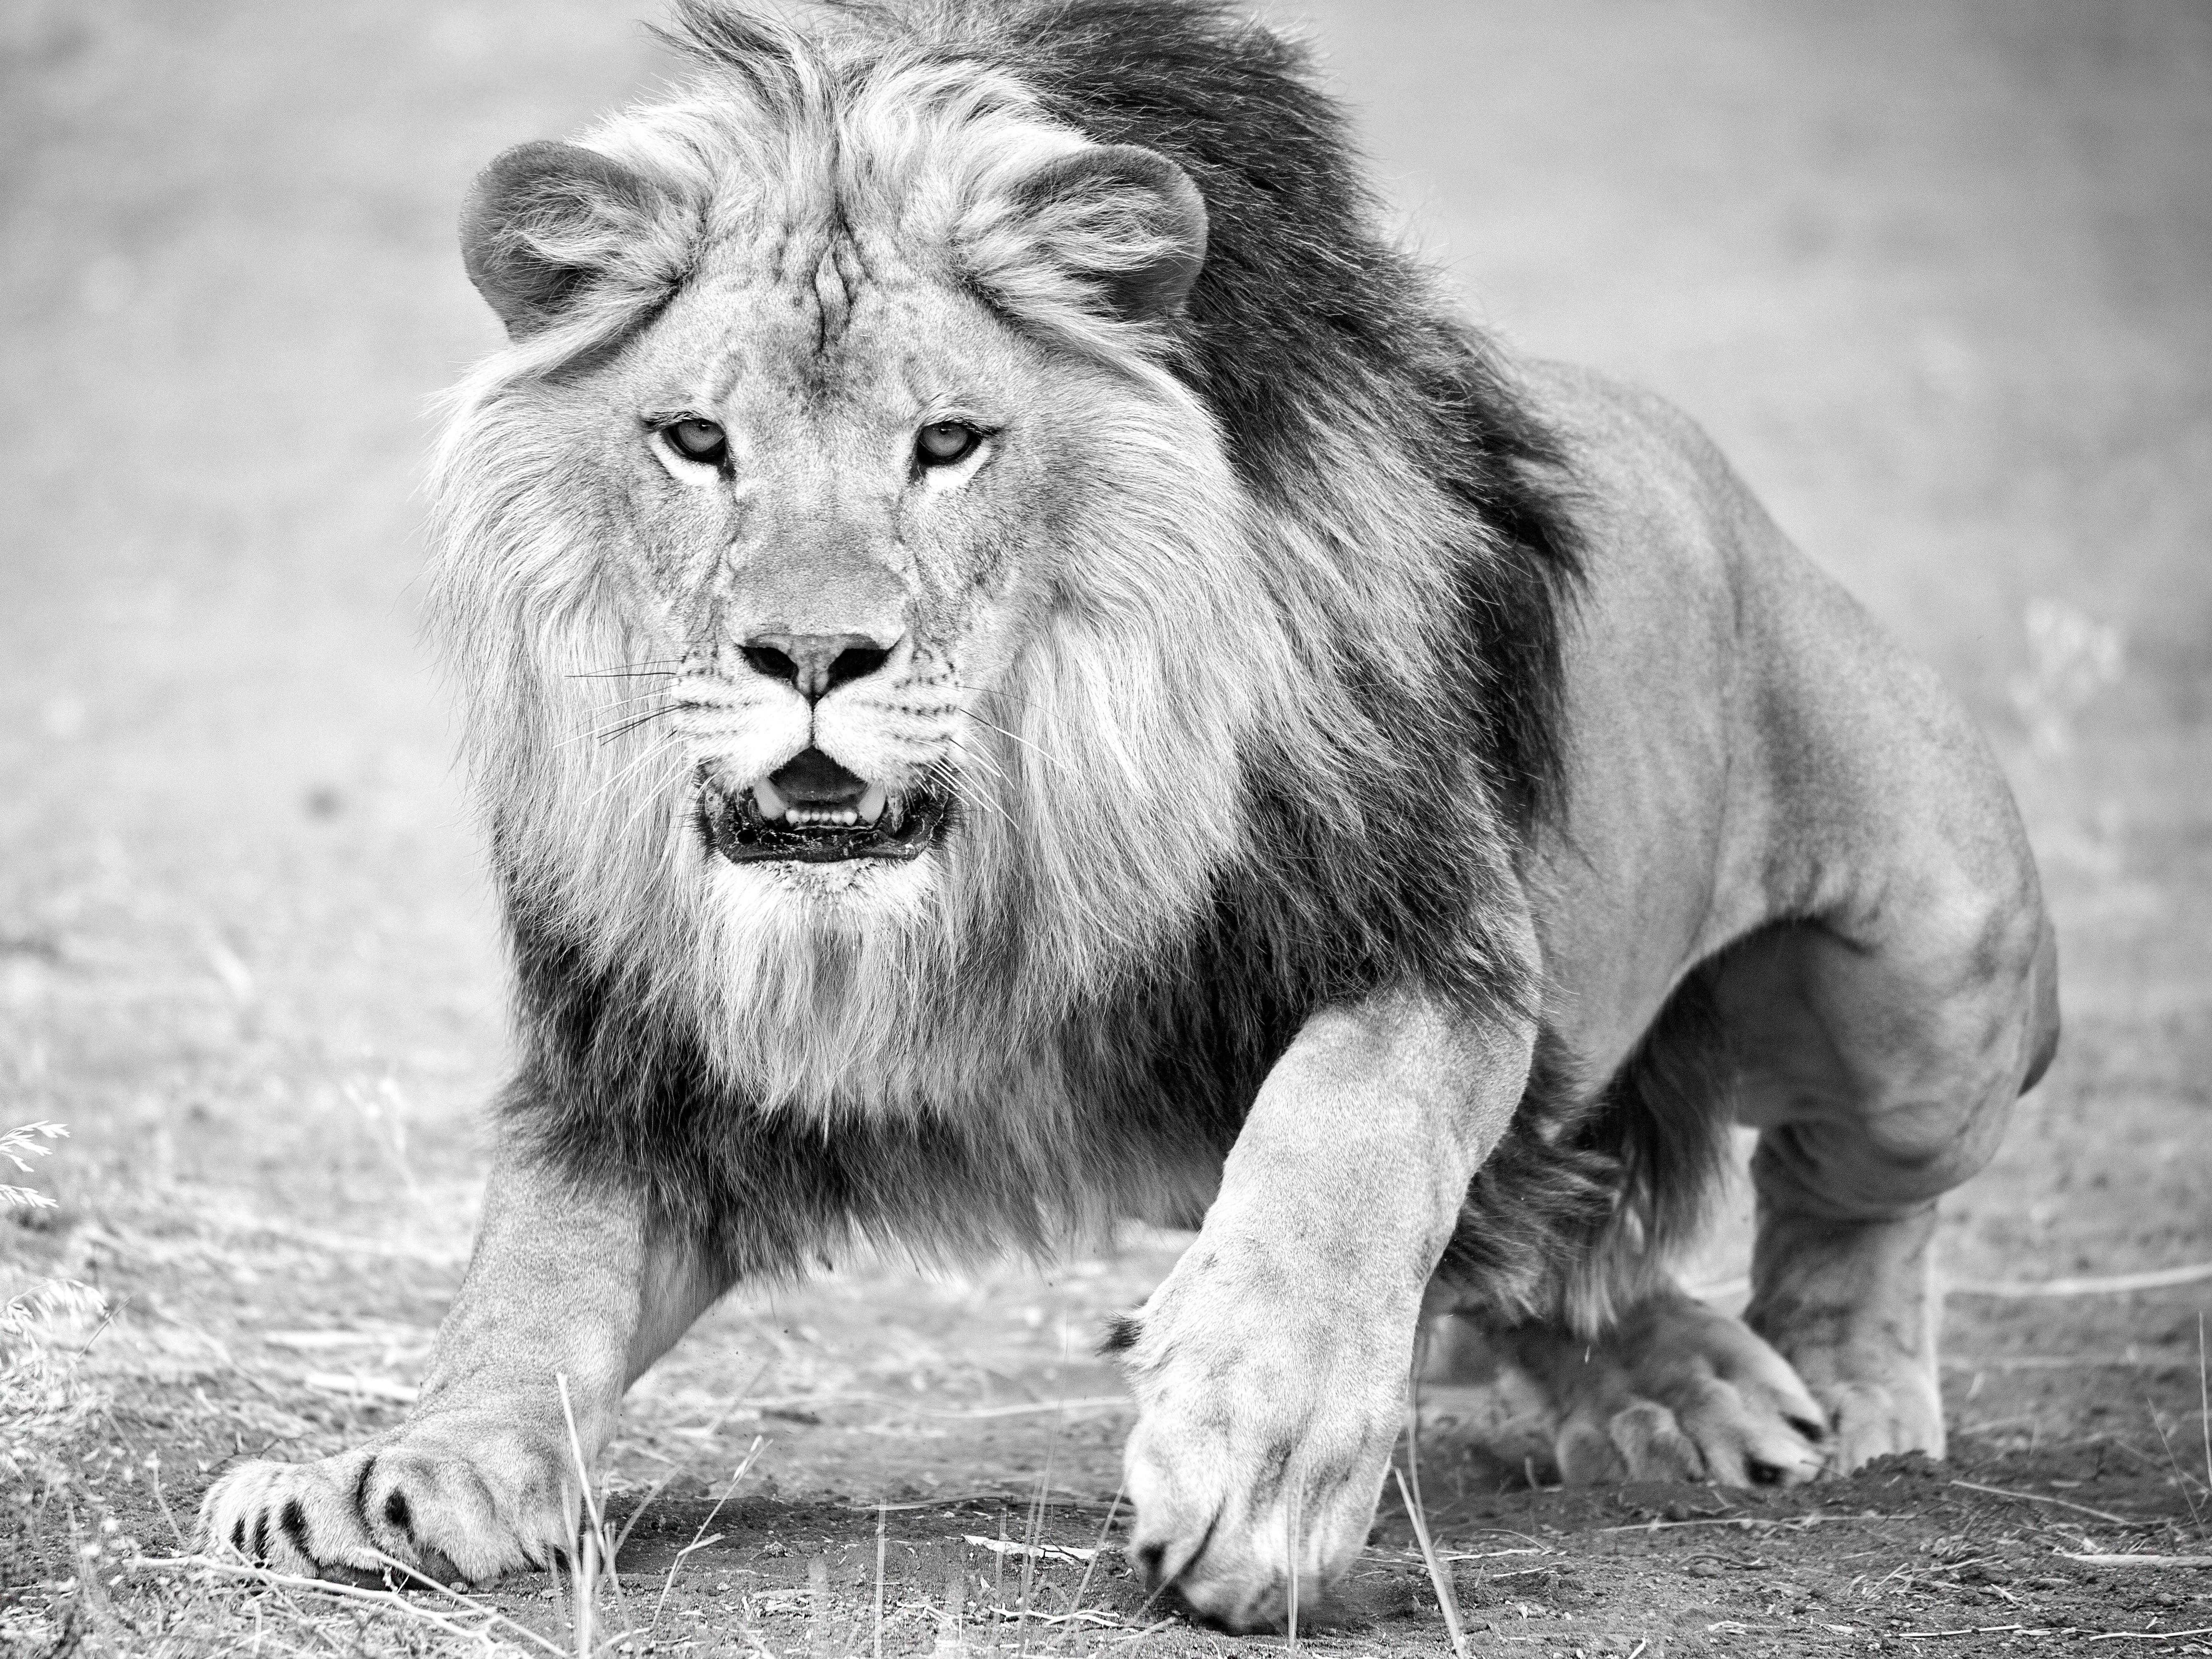 Animal Print Shane Russeck - « The Charge » 36x48 - Photographie de lion en noir et blanc 